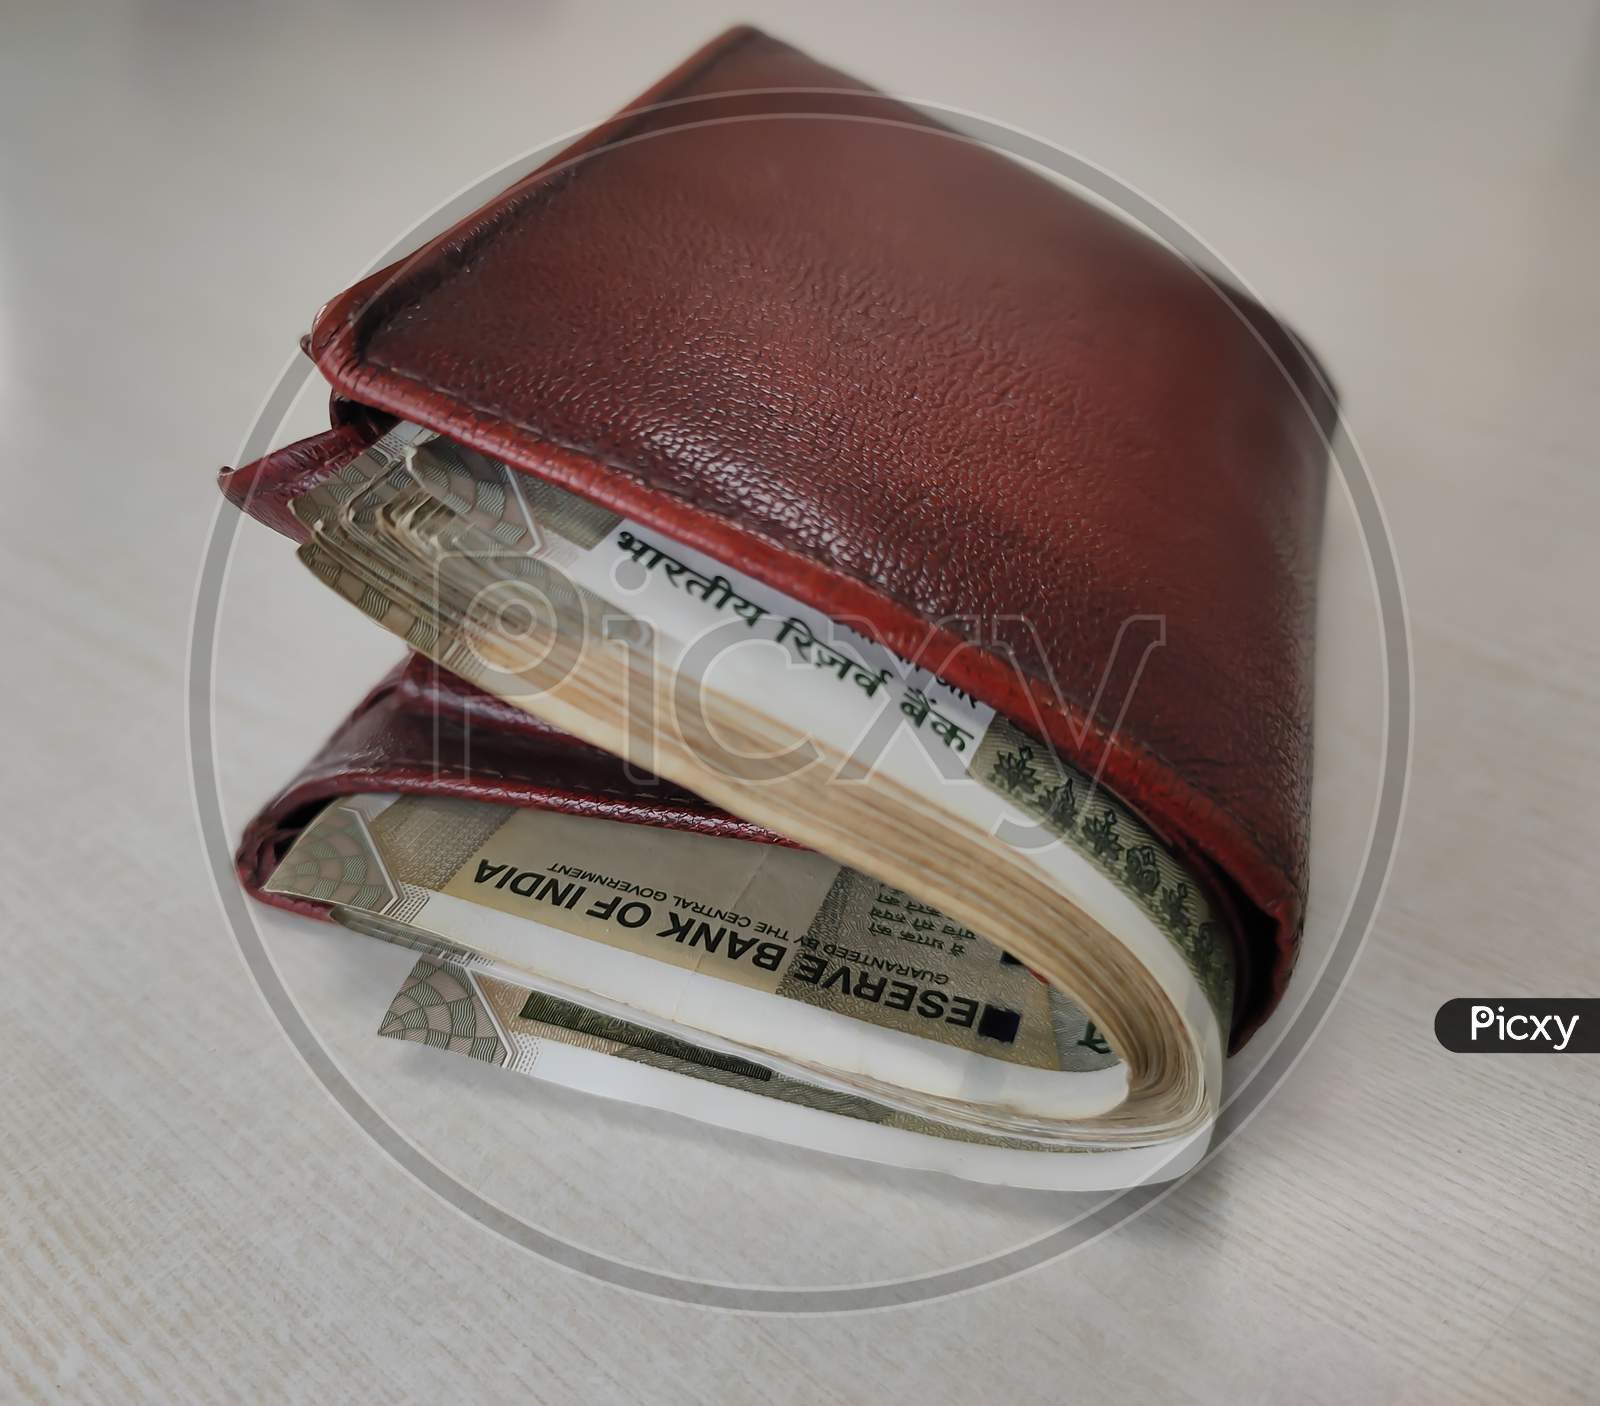 Black Woman Handbag Full Money On Stock Photo 576925222 | Shutterstock